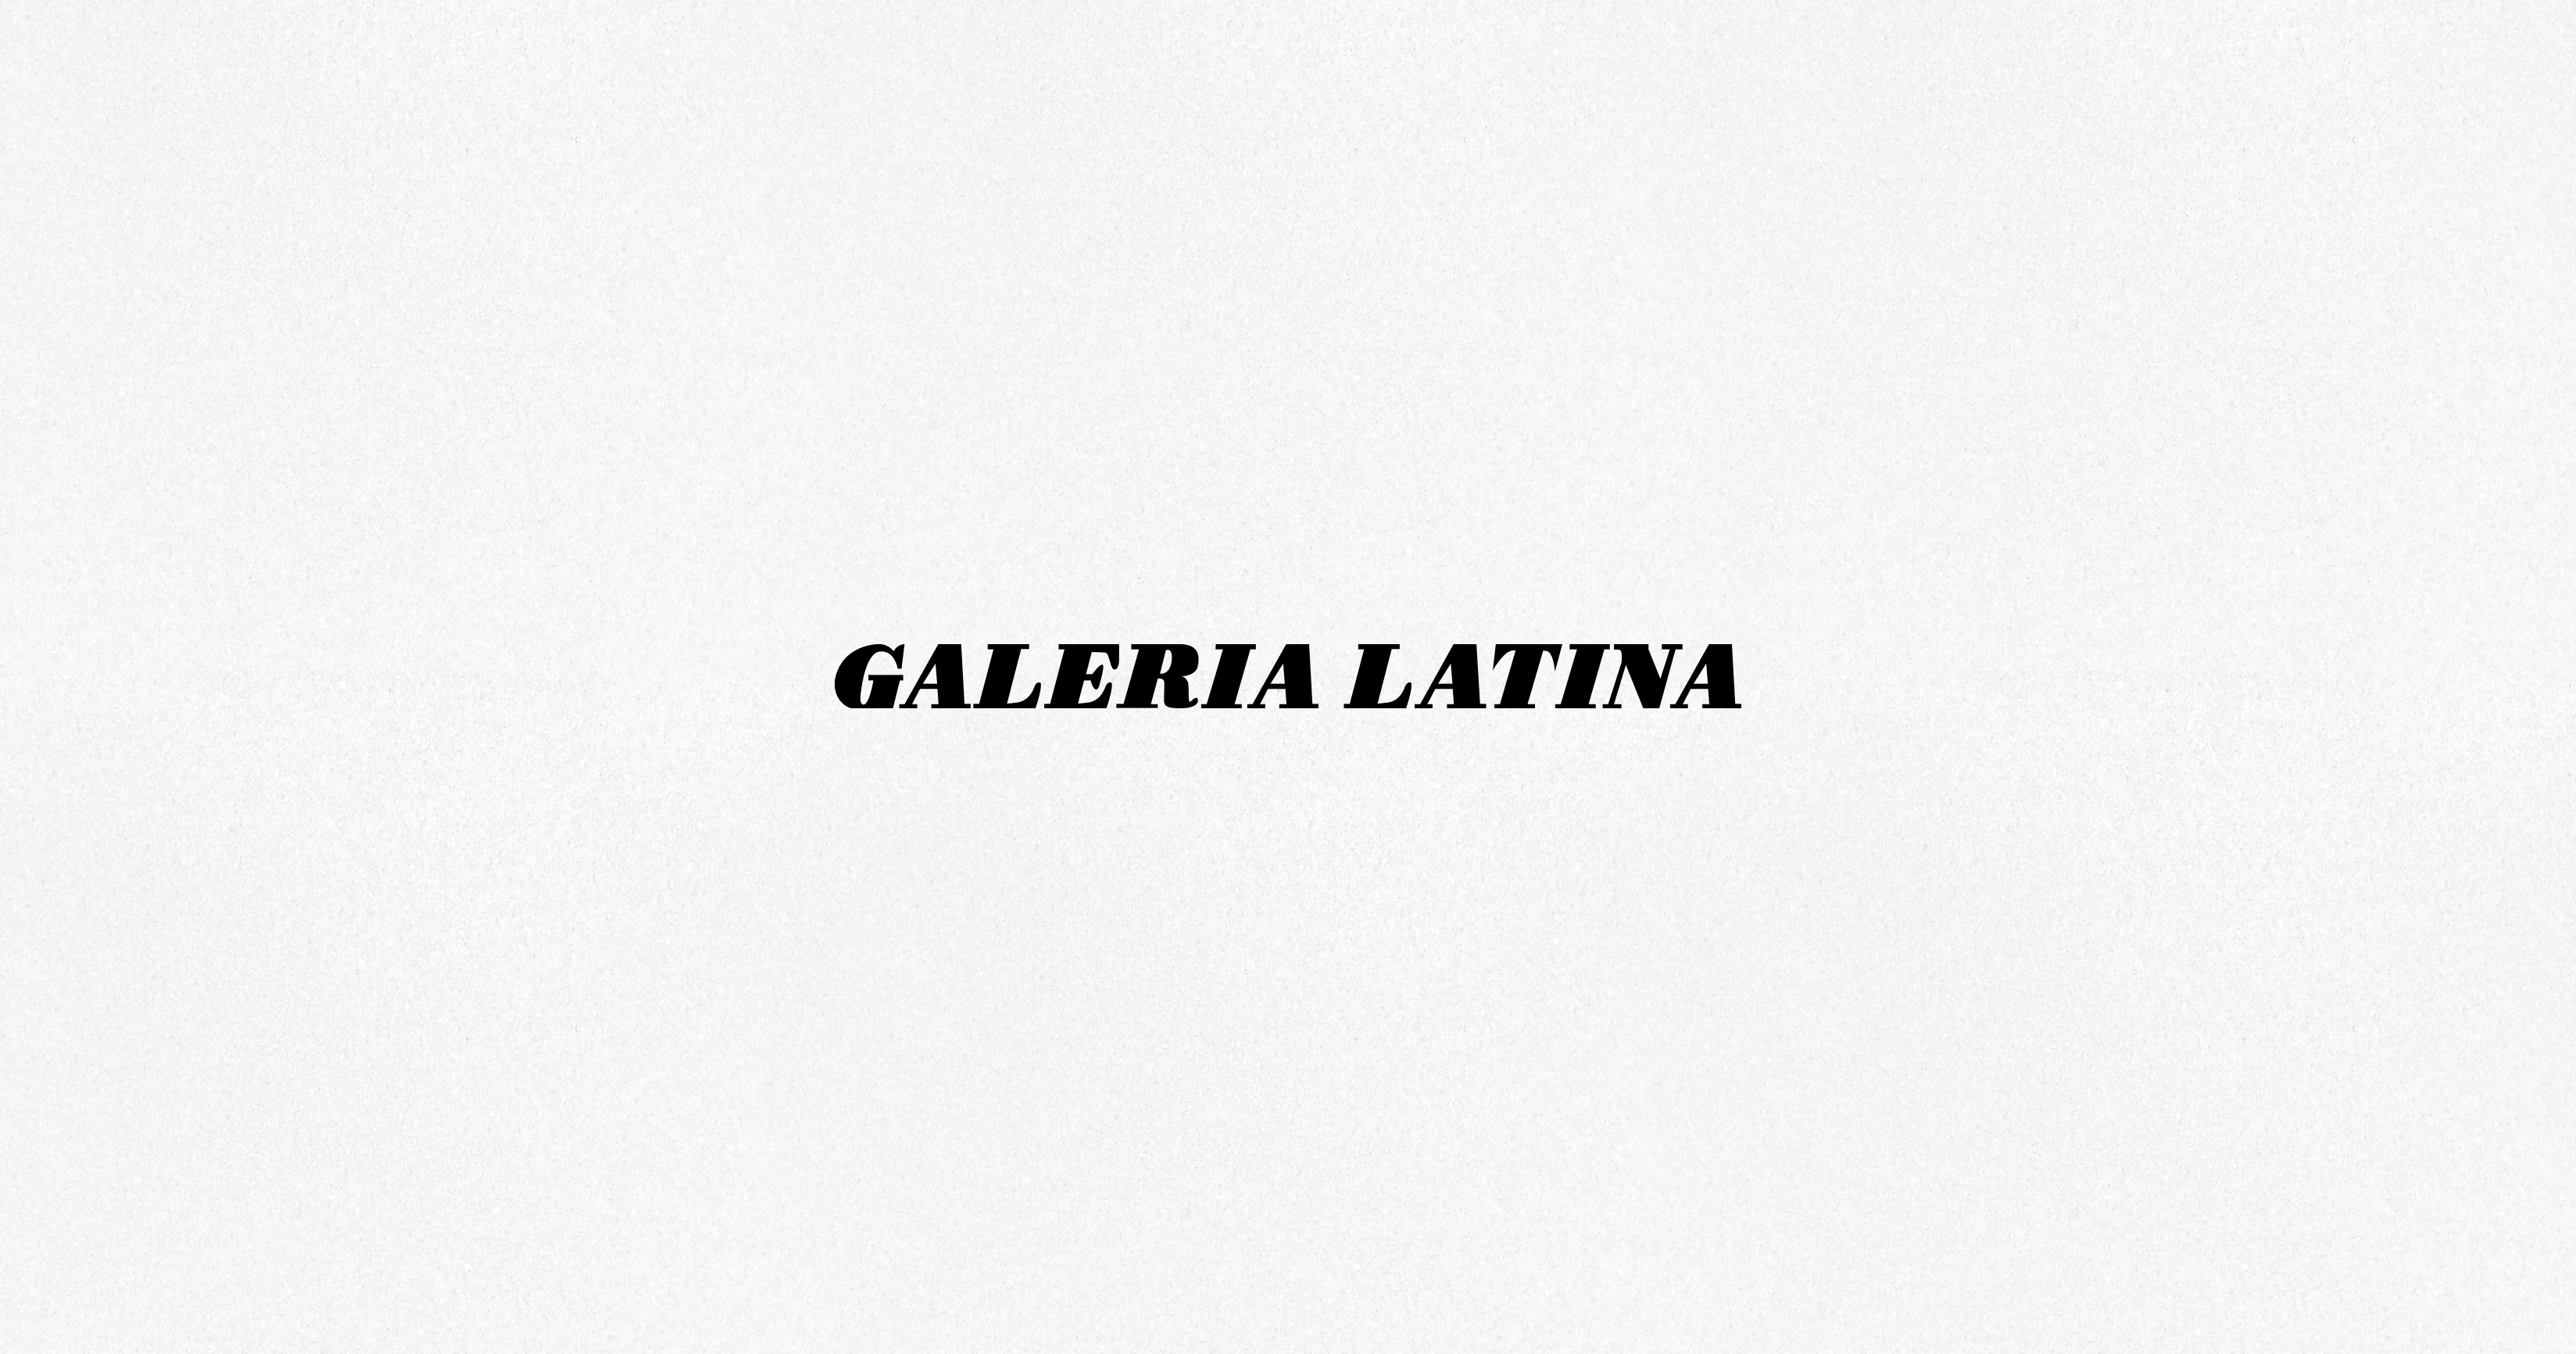 (c) Galerialatina.com.uy